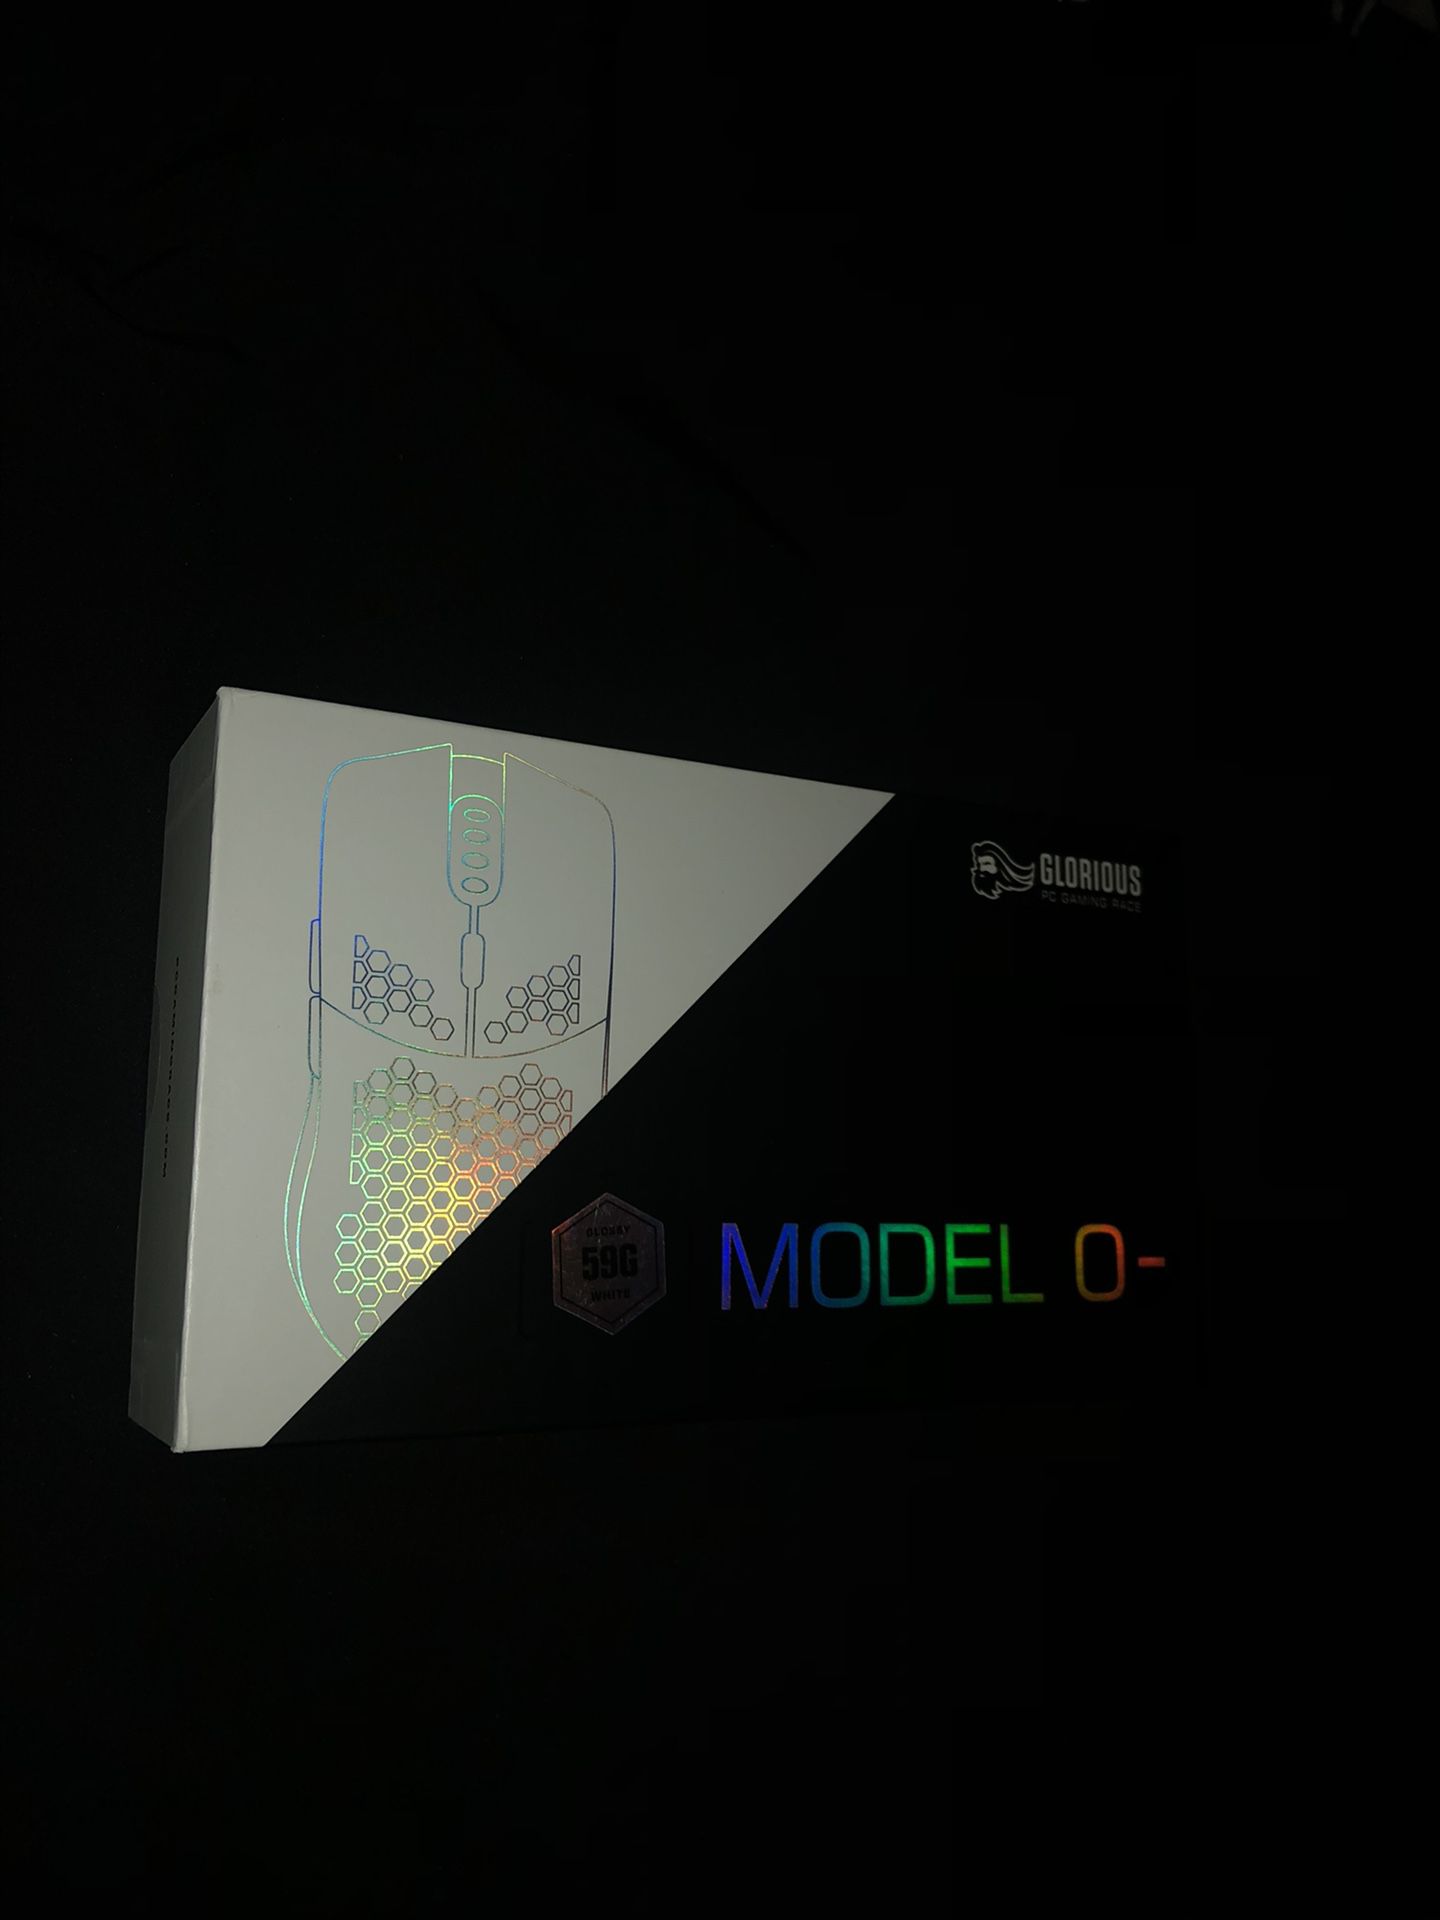 Glorious Mobel O- Gaming Mouse RGB (White)